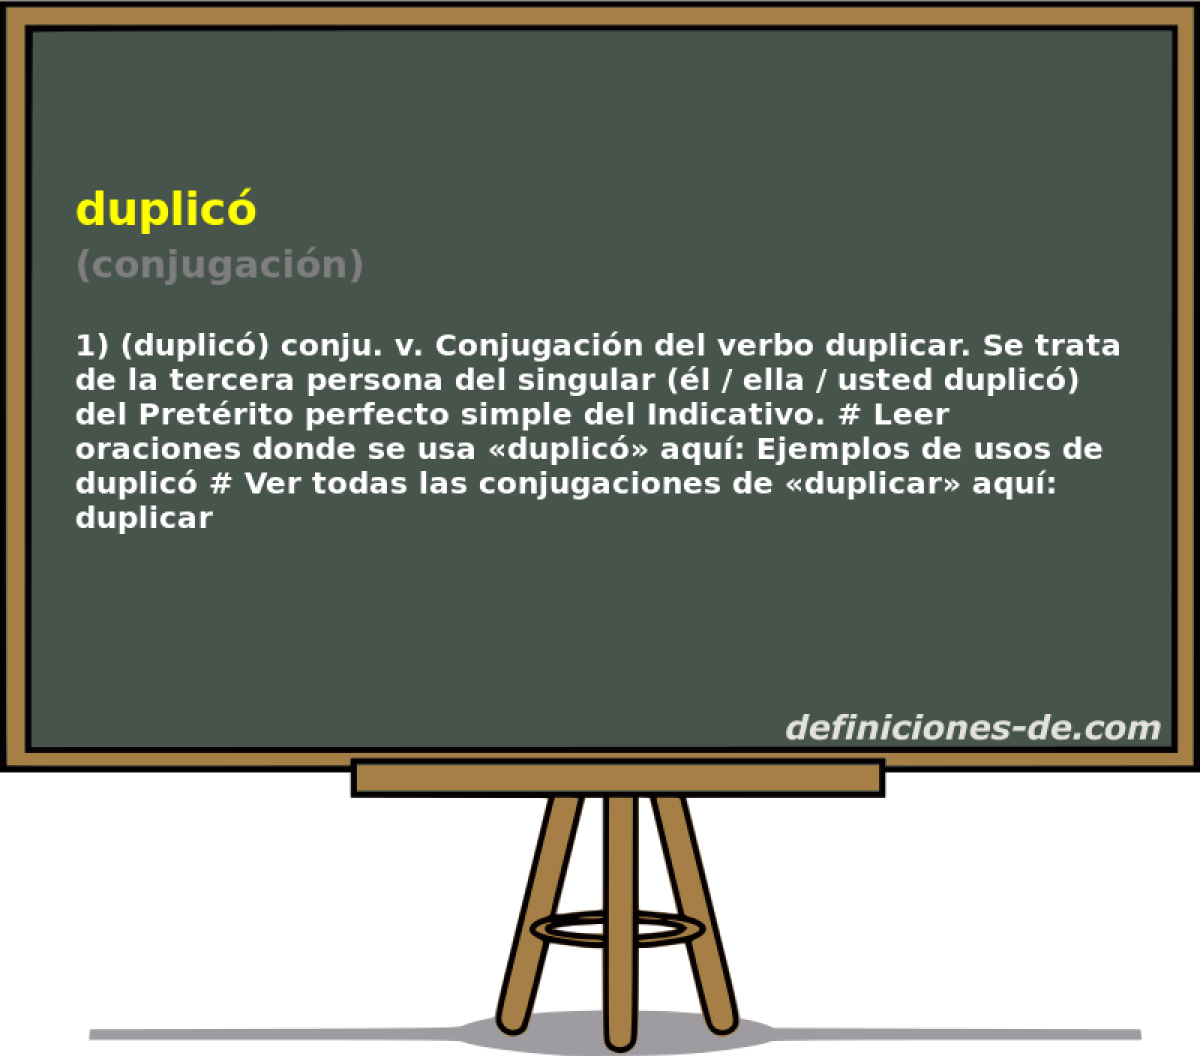 duplic (conjugacin)